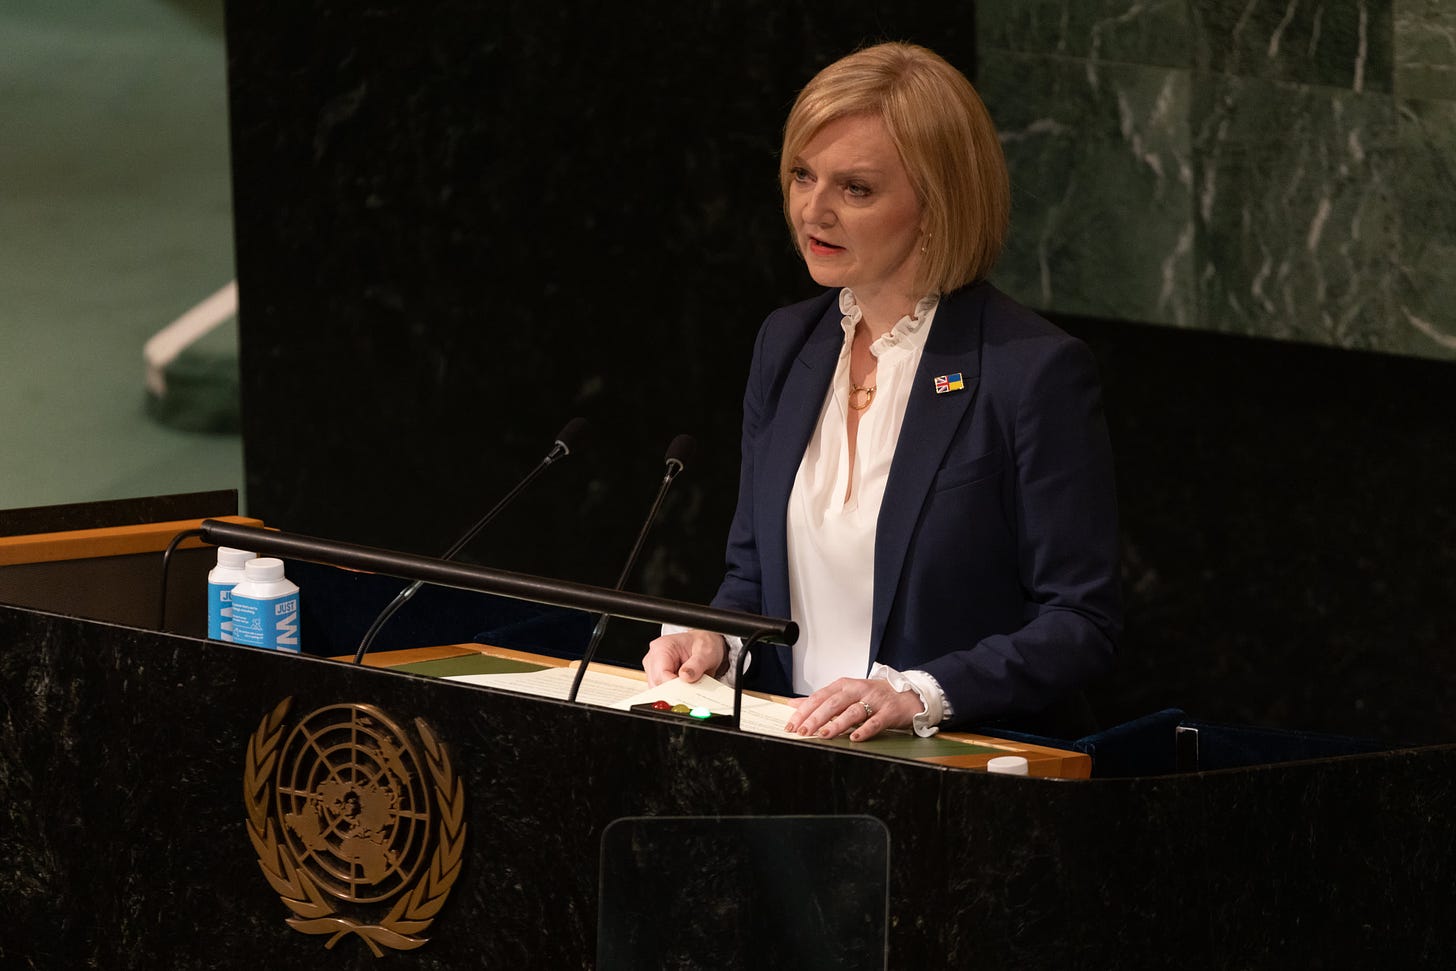 UK Prime Minister Liz Truss slams Putin, hails queen in debut UN speech